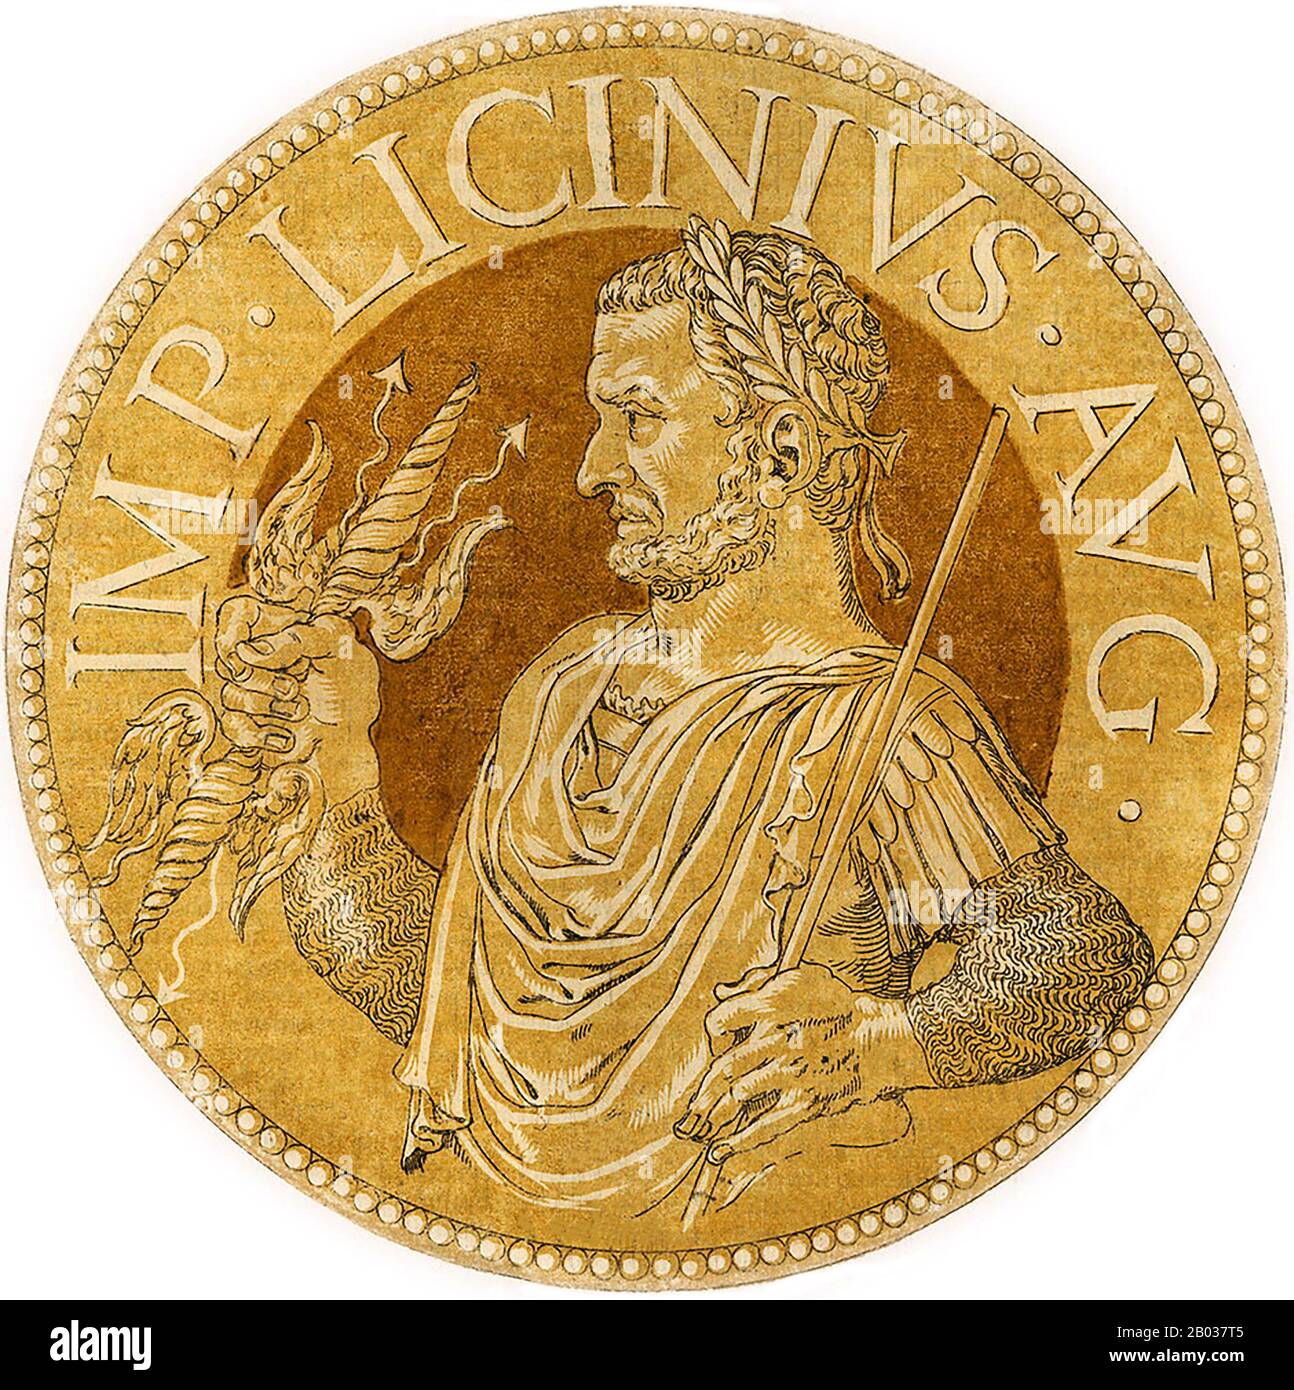 Licinius (263-325 ce) est né d'une famille paysanne et était un ami de l'enfance proche du futur empereur Galerius, devenant un proche confident de Galerius et confié aux provinces orientales lorsque Galerius s'est rendu à traiter avec l'usurier Maxentius. Galerius a élevé Licinius au co-empereur, Auguste en Occident, en 308, bien qu'il ait personnellement eu le contrôle sur les provinces de l'est. Après que les empereurs Maxentius et Maximinus II ont formé une alliance, Licinius a été forcé de conclure un accord formel avec Constantin I, épousant sa demi-sœur Flavia Julia Constantia. Il a combattu contre le forc de Maximinus Banque D'Images